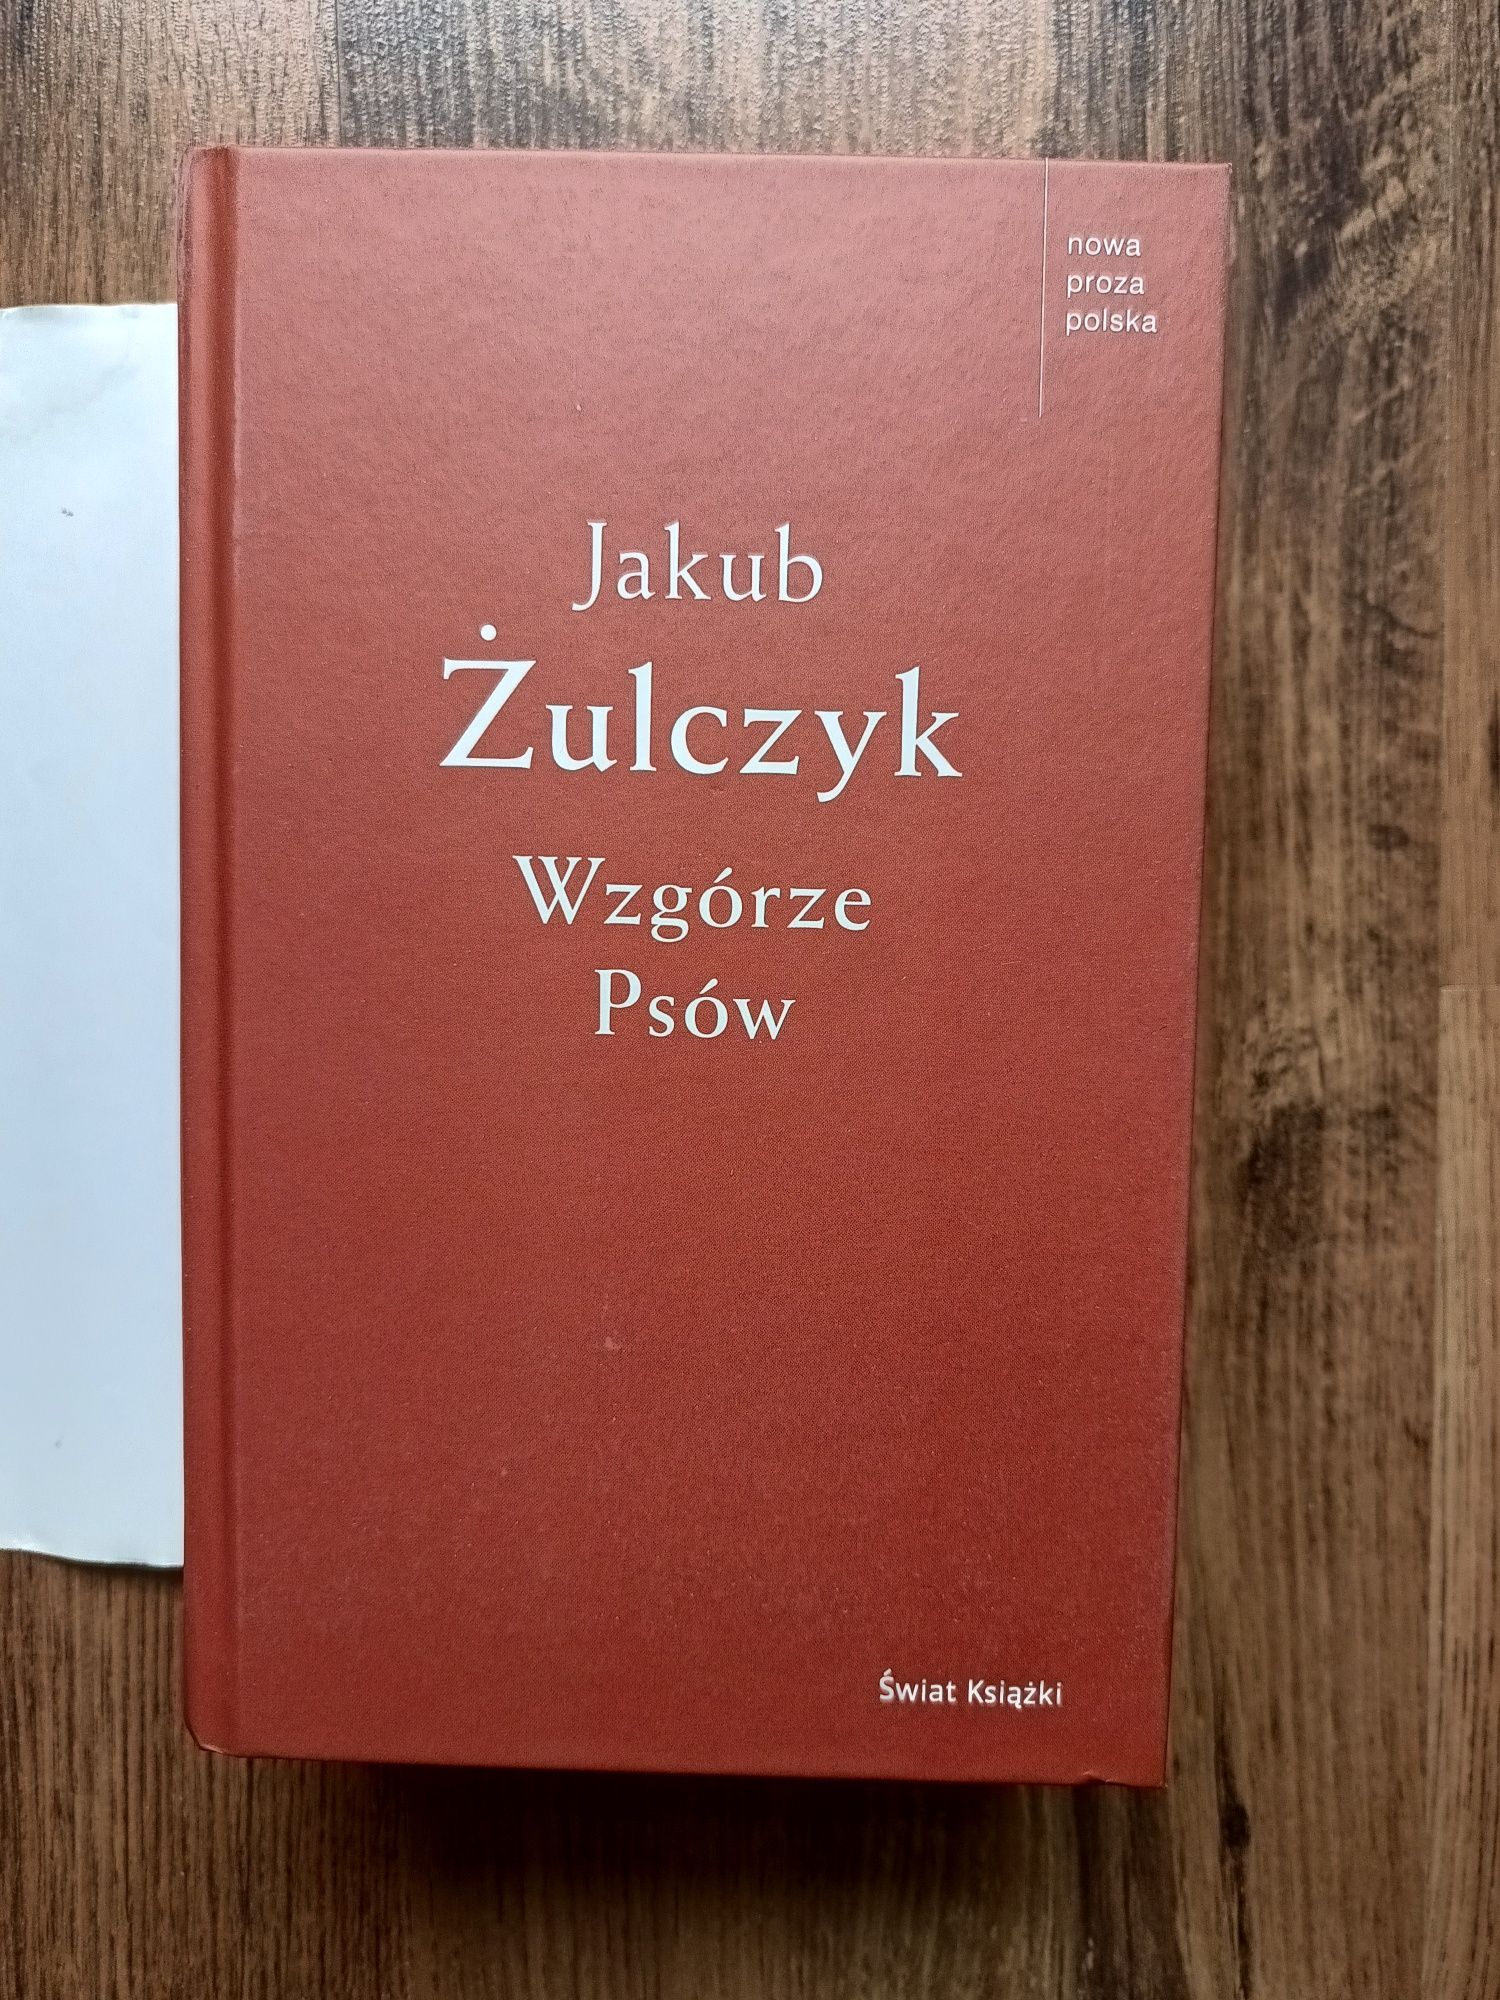 Książka Jakub Żulczyk Wzgórze Psów 2017 rok ilość stron 861 Poznań